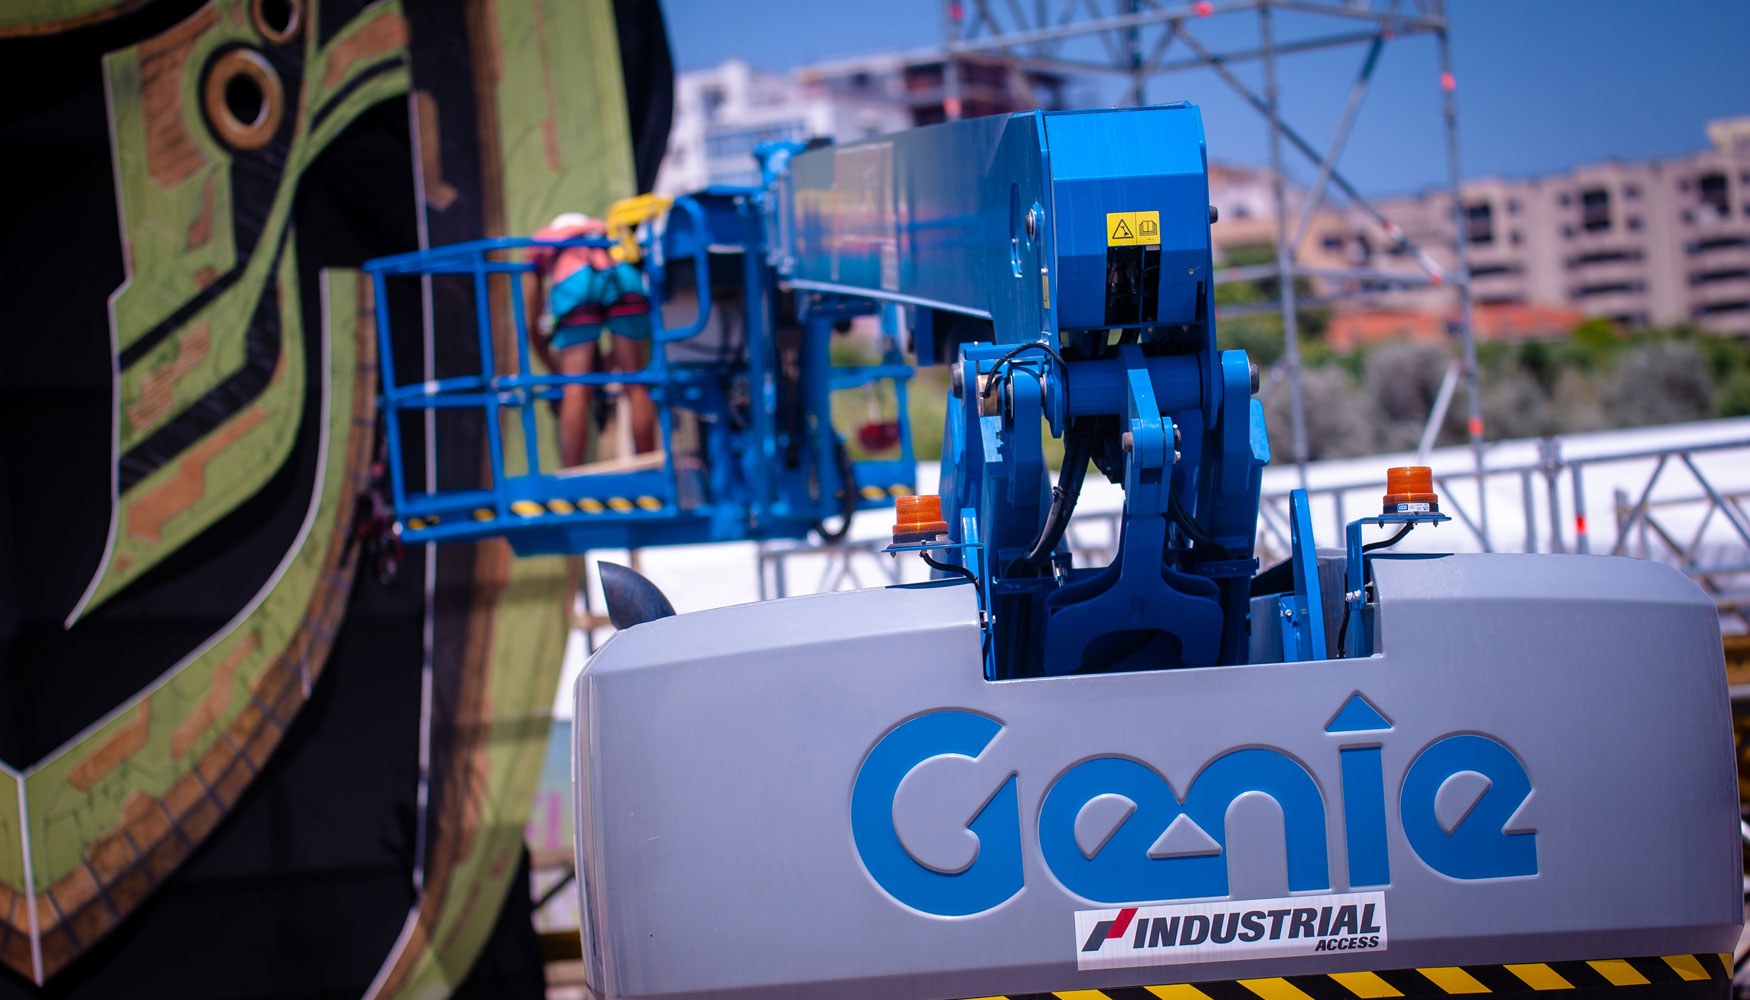 110 de las mquinas Genie completamente basadas en CAN de Industrial Access se encuentran equipadas con la nueva solucin telemtica Genie Lift...